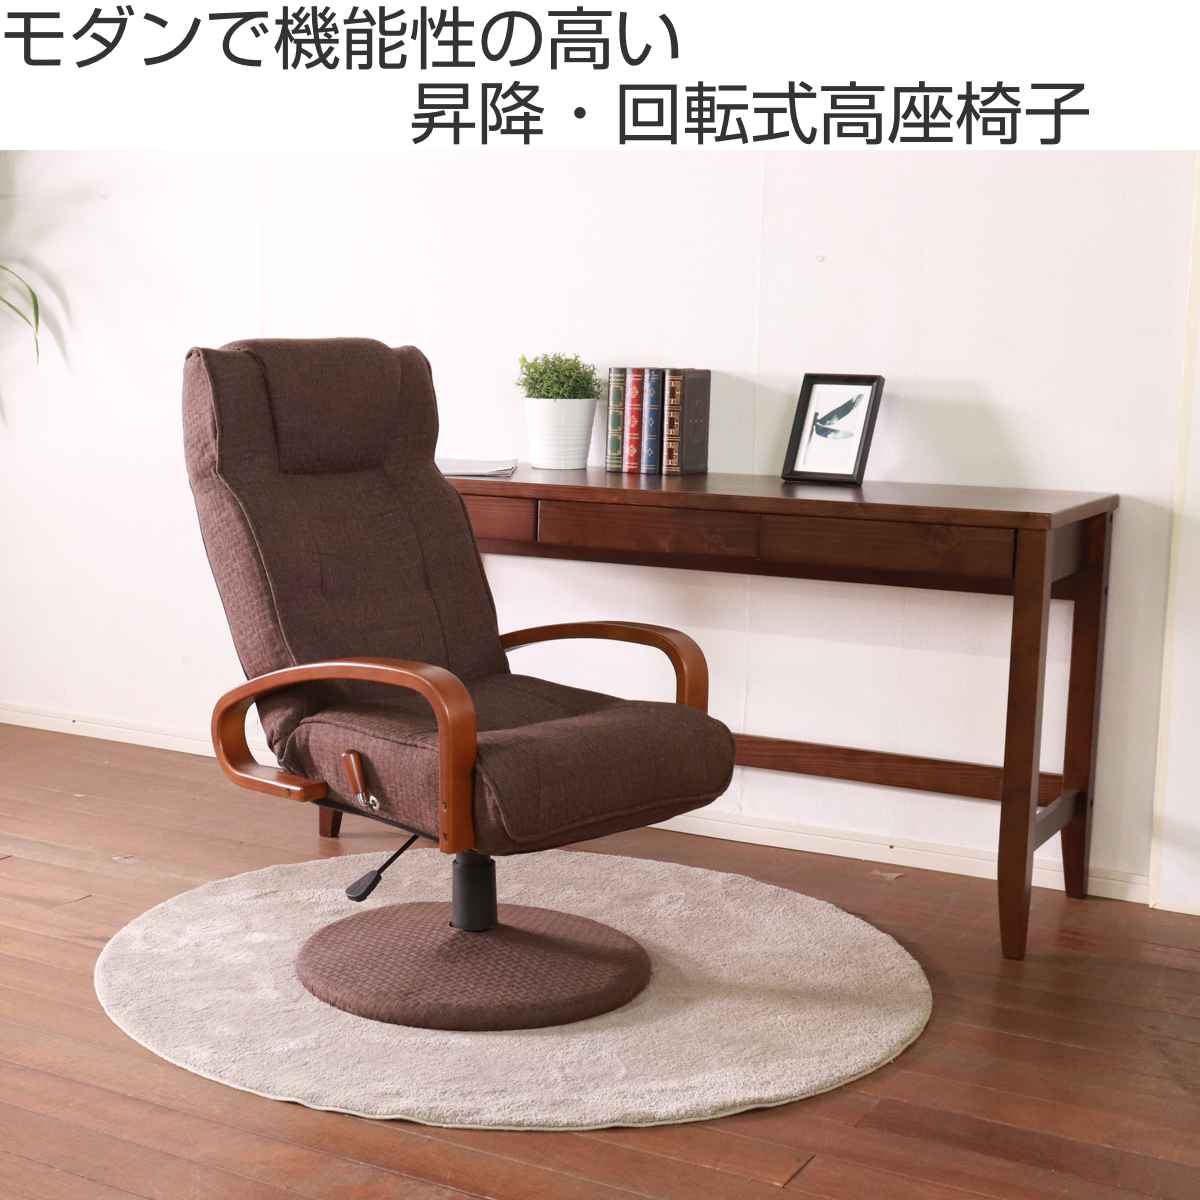 高座椅子/リクライニングチェア 【グリーン】 幅58cm 木製 ハイバック 肘付